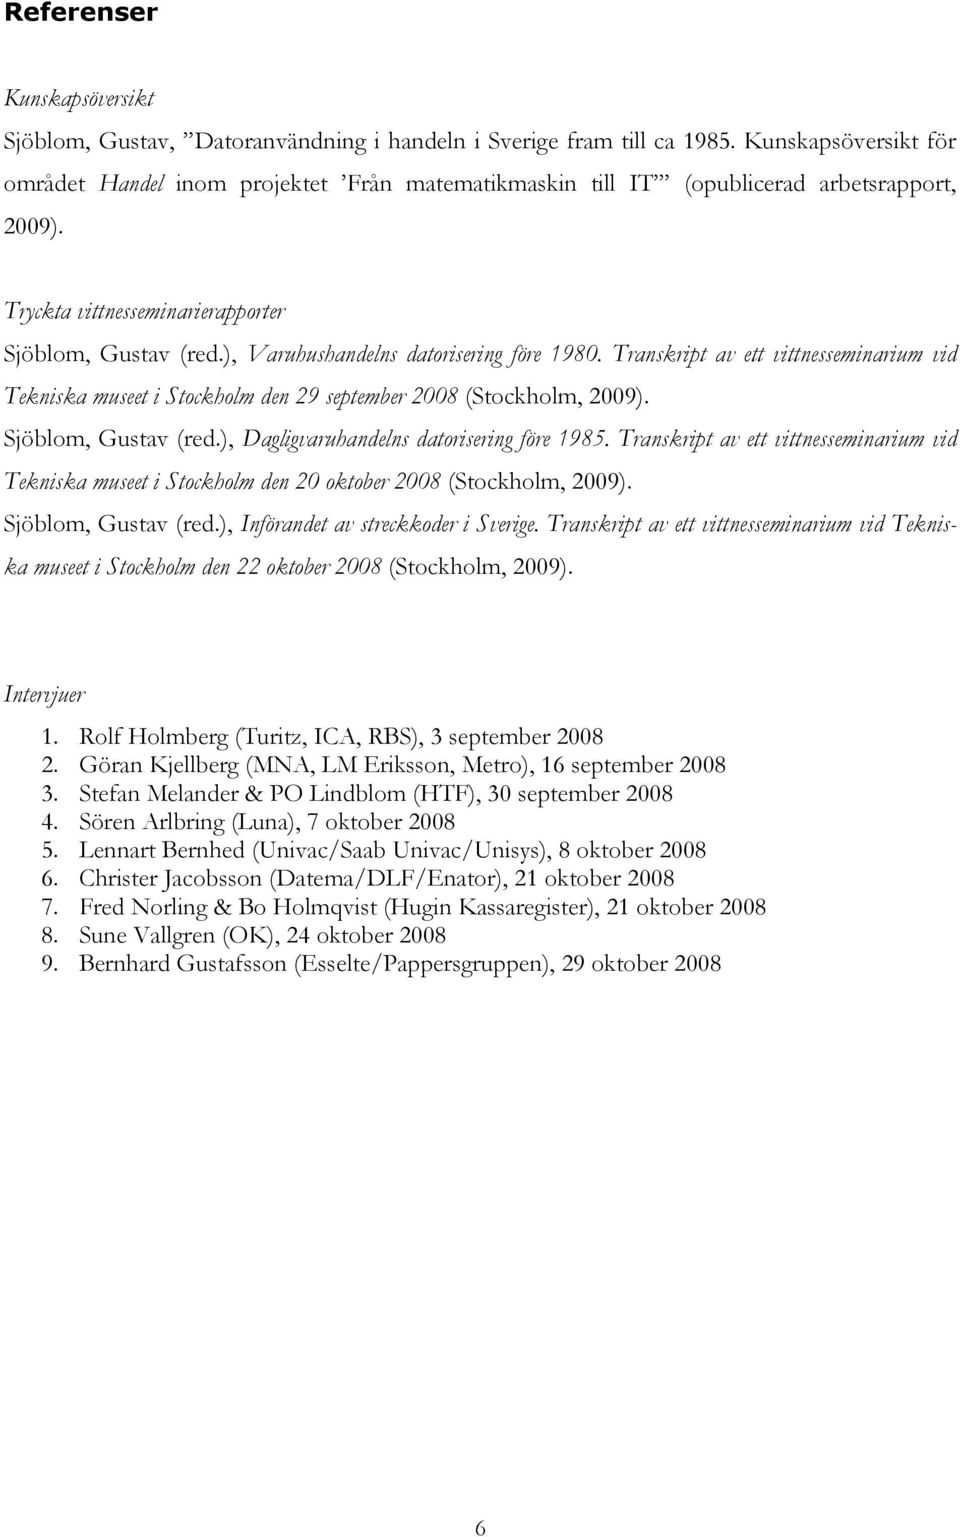 ), Varuhushandelns datorisering före 1980. Transkript av ett vittnesseminarium vid Tekniska museet i Stockholm den 29 september 2008 (Stockholm, 2009). Sjöblom, Gustav (red.